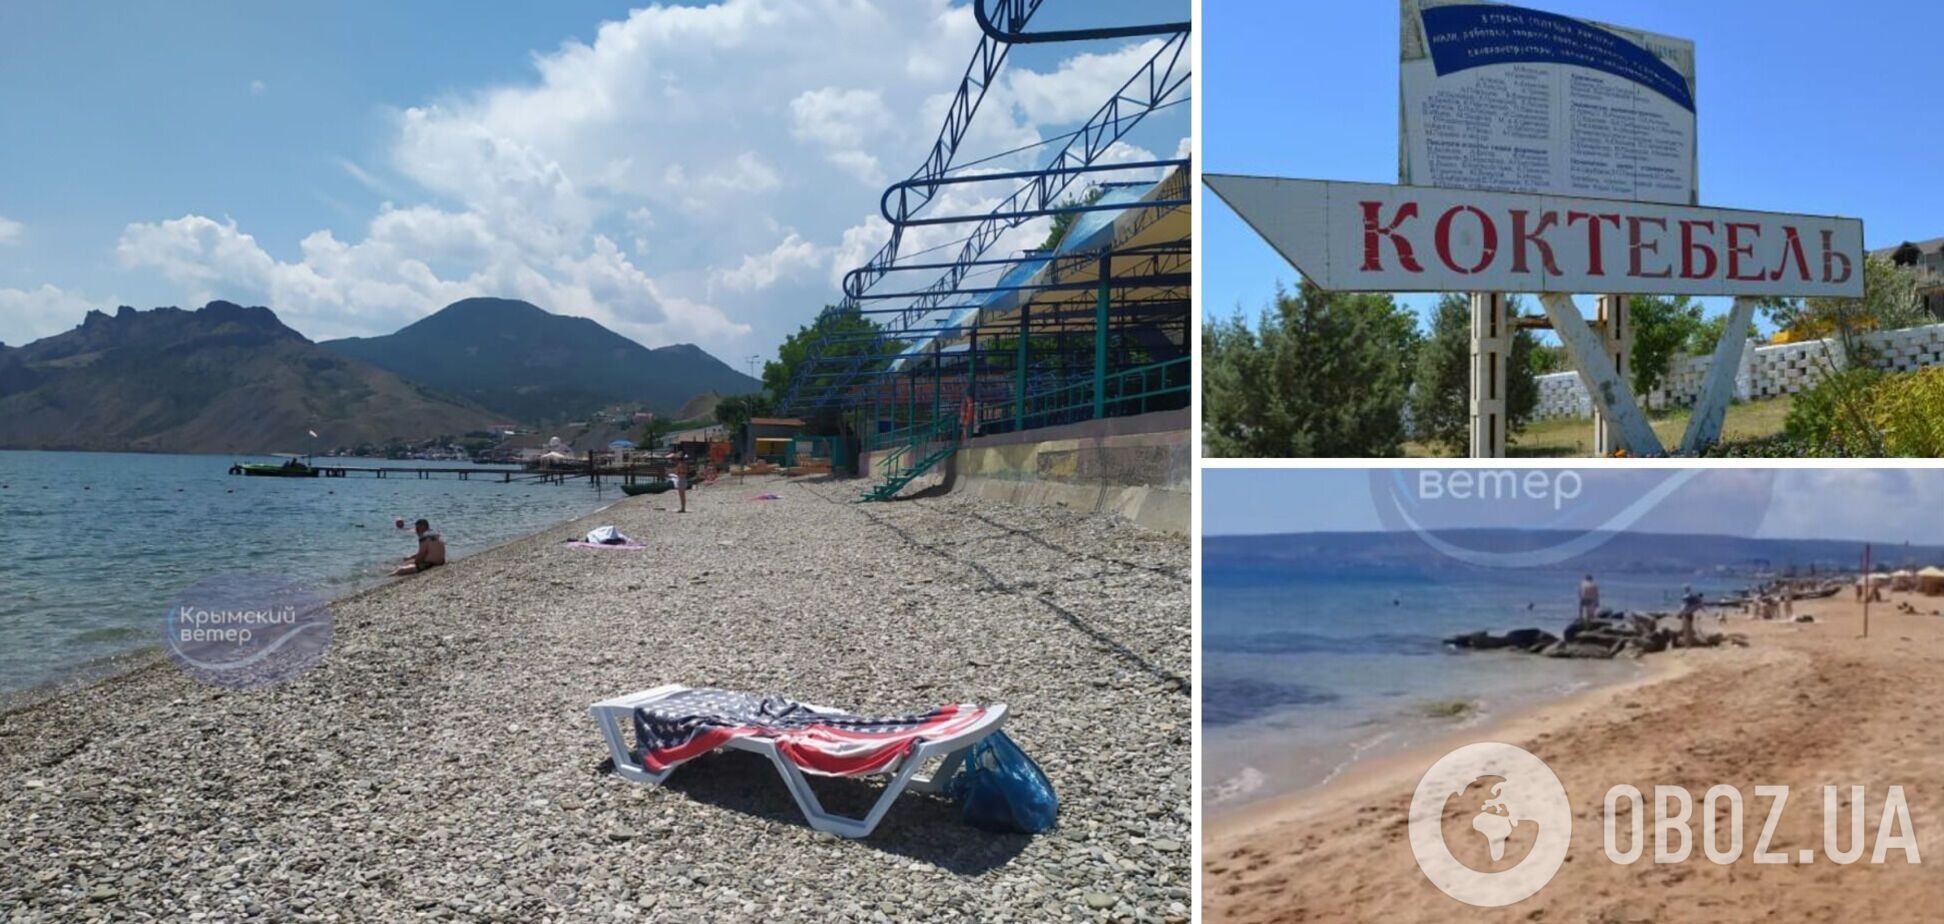 'Людей совсем мало': в оккупированном Крыму удивляются пустым пляжам. Фото и видео